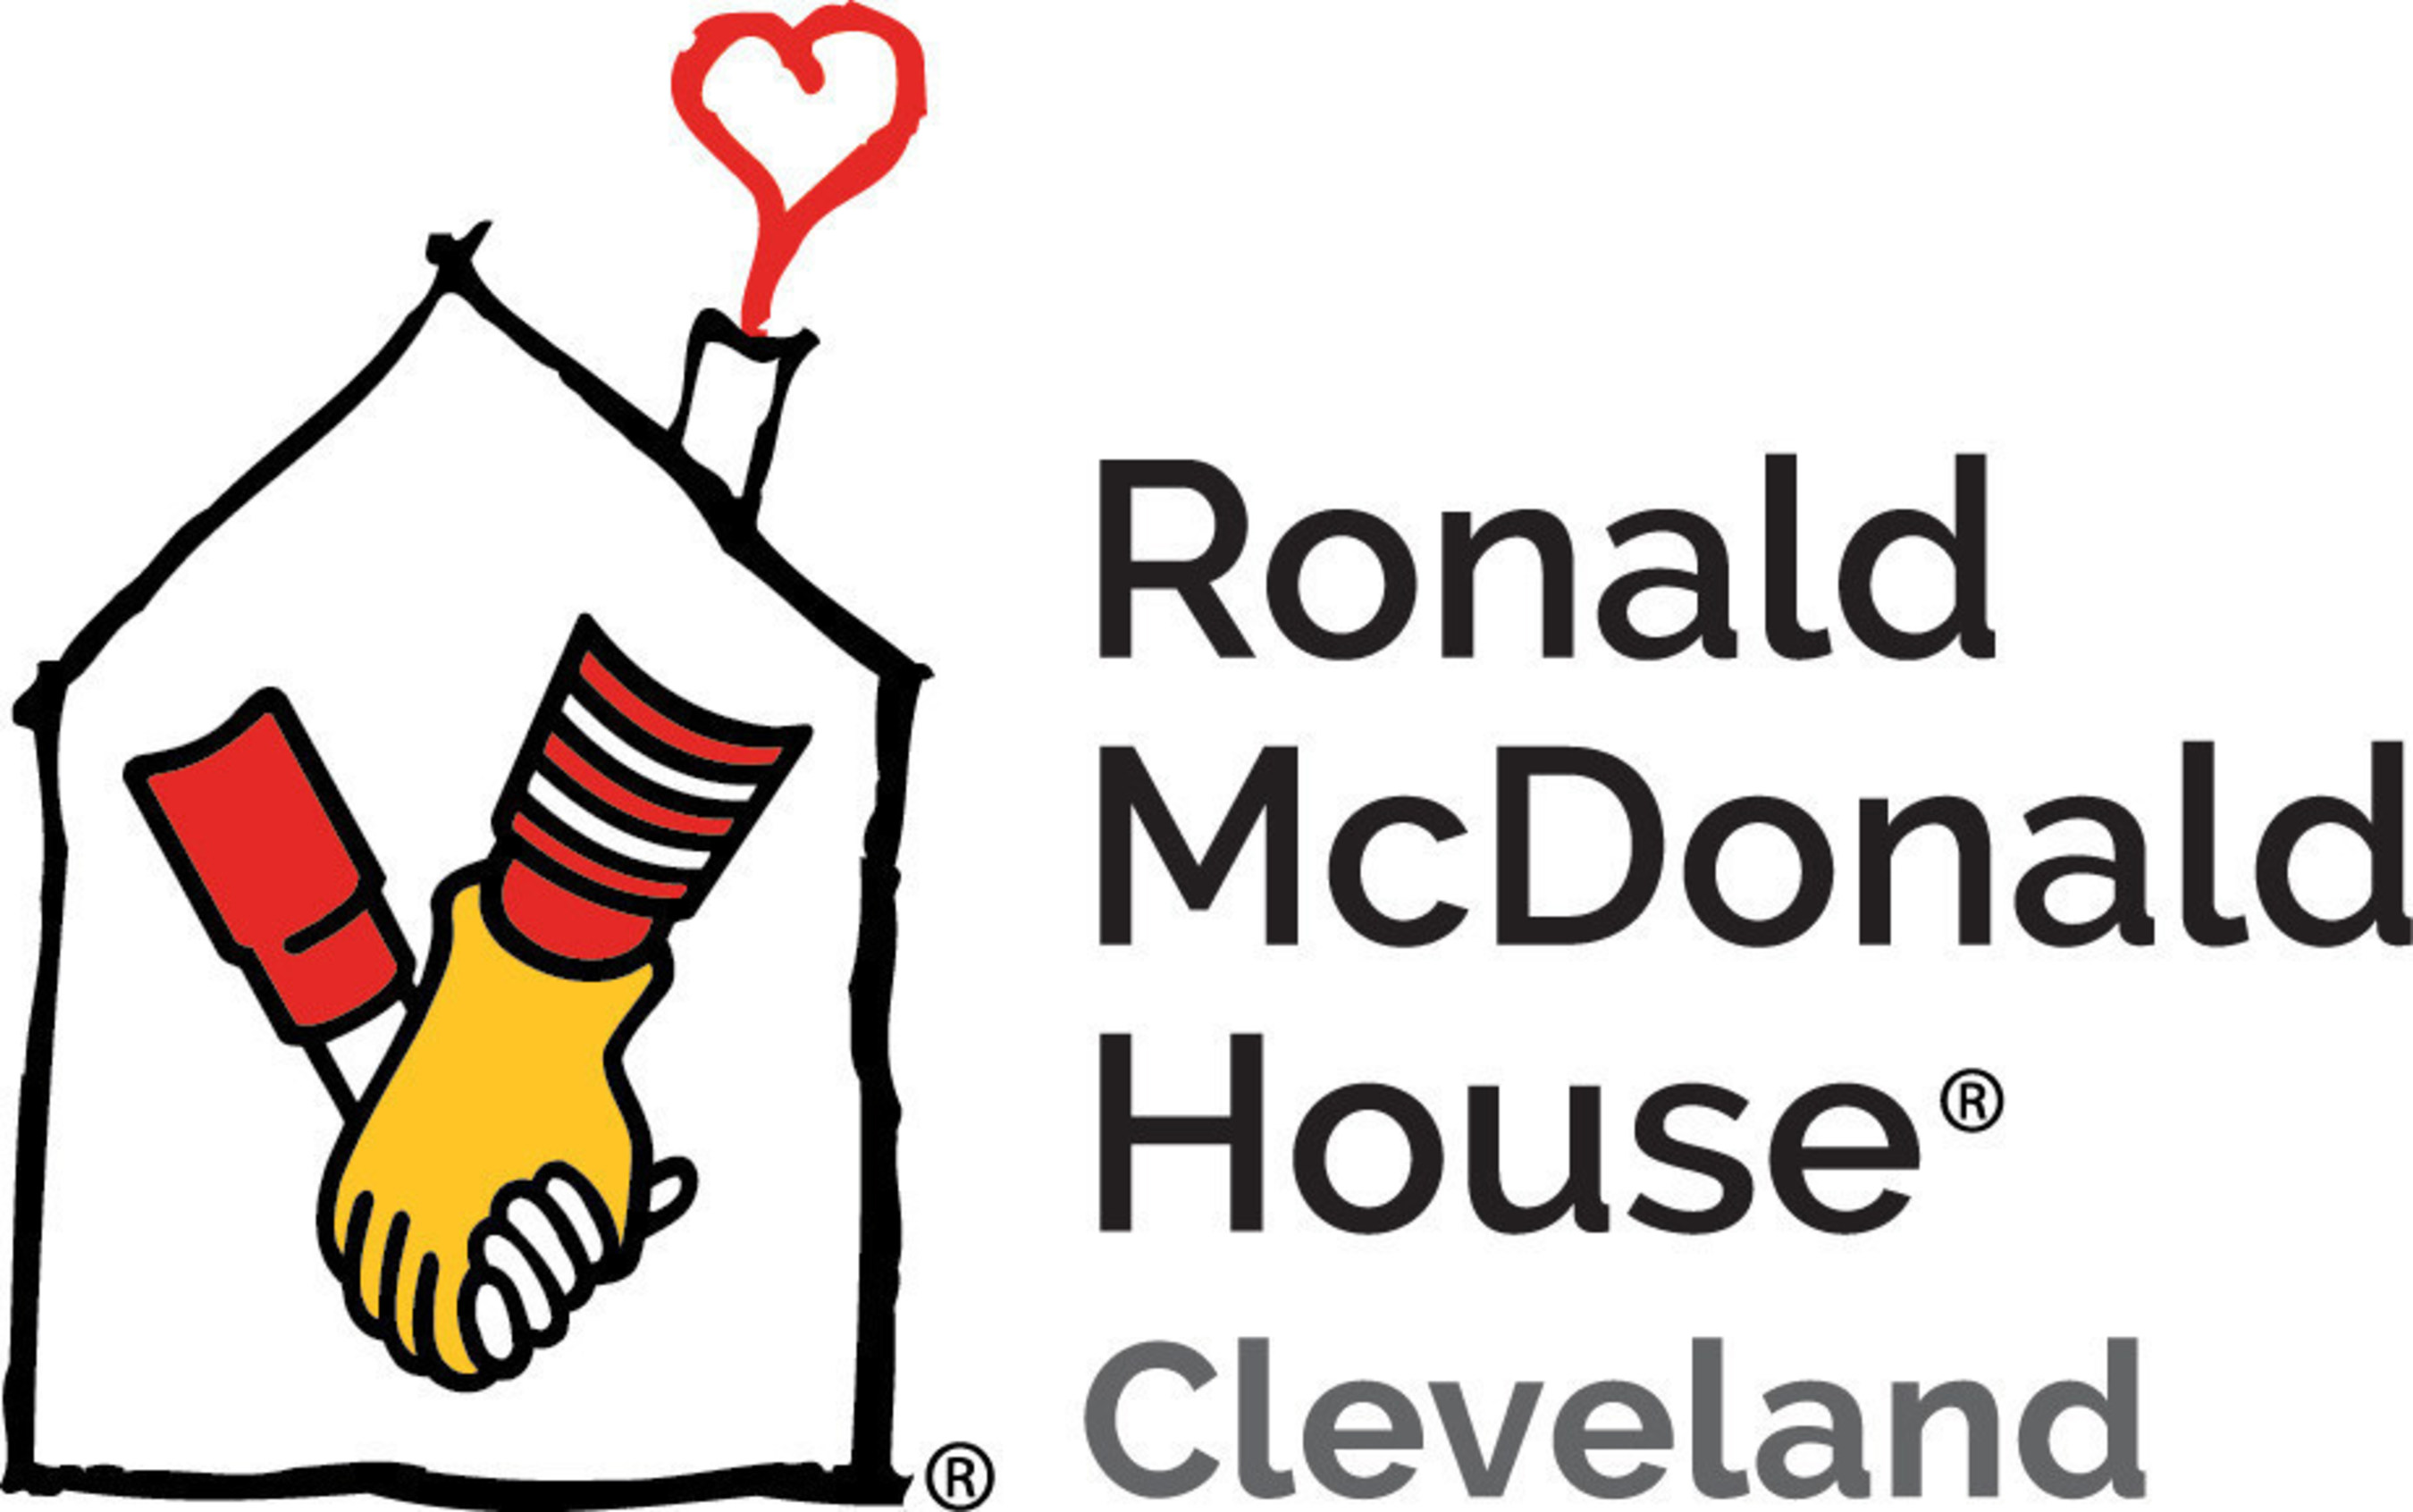 Ronald McDonald House of Cleveland